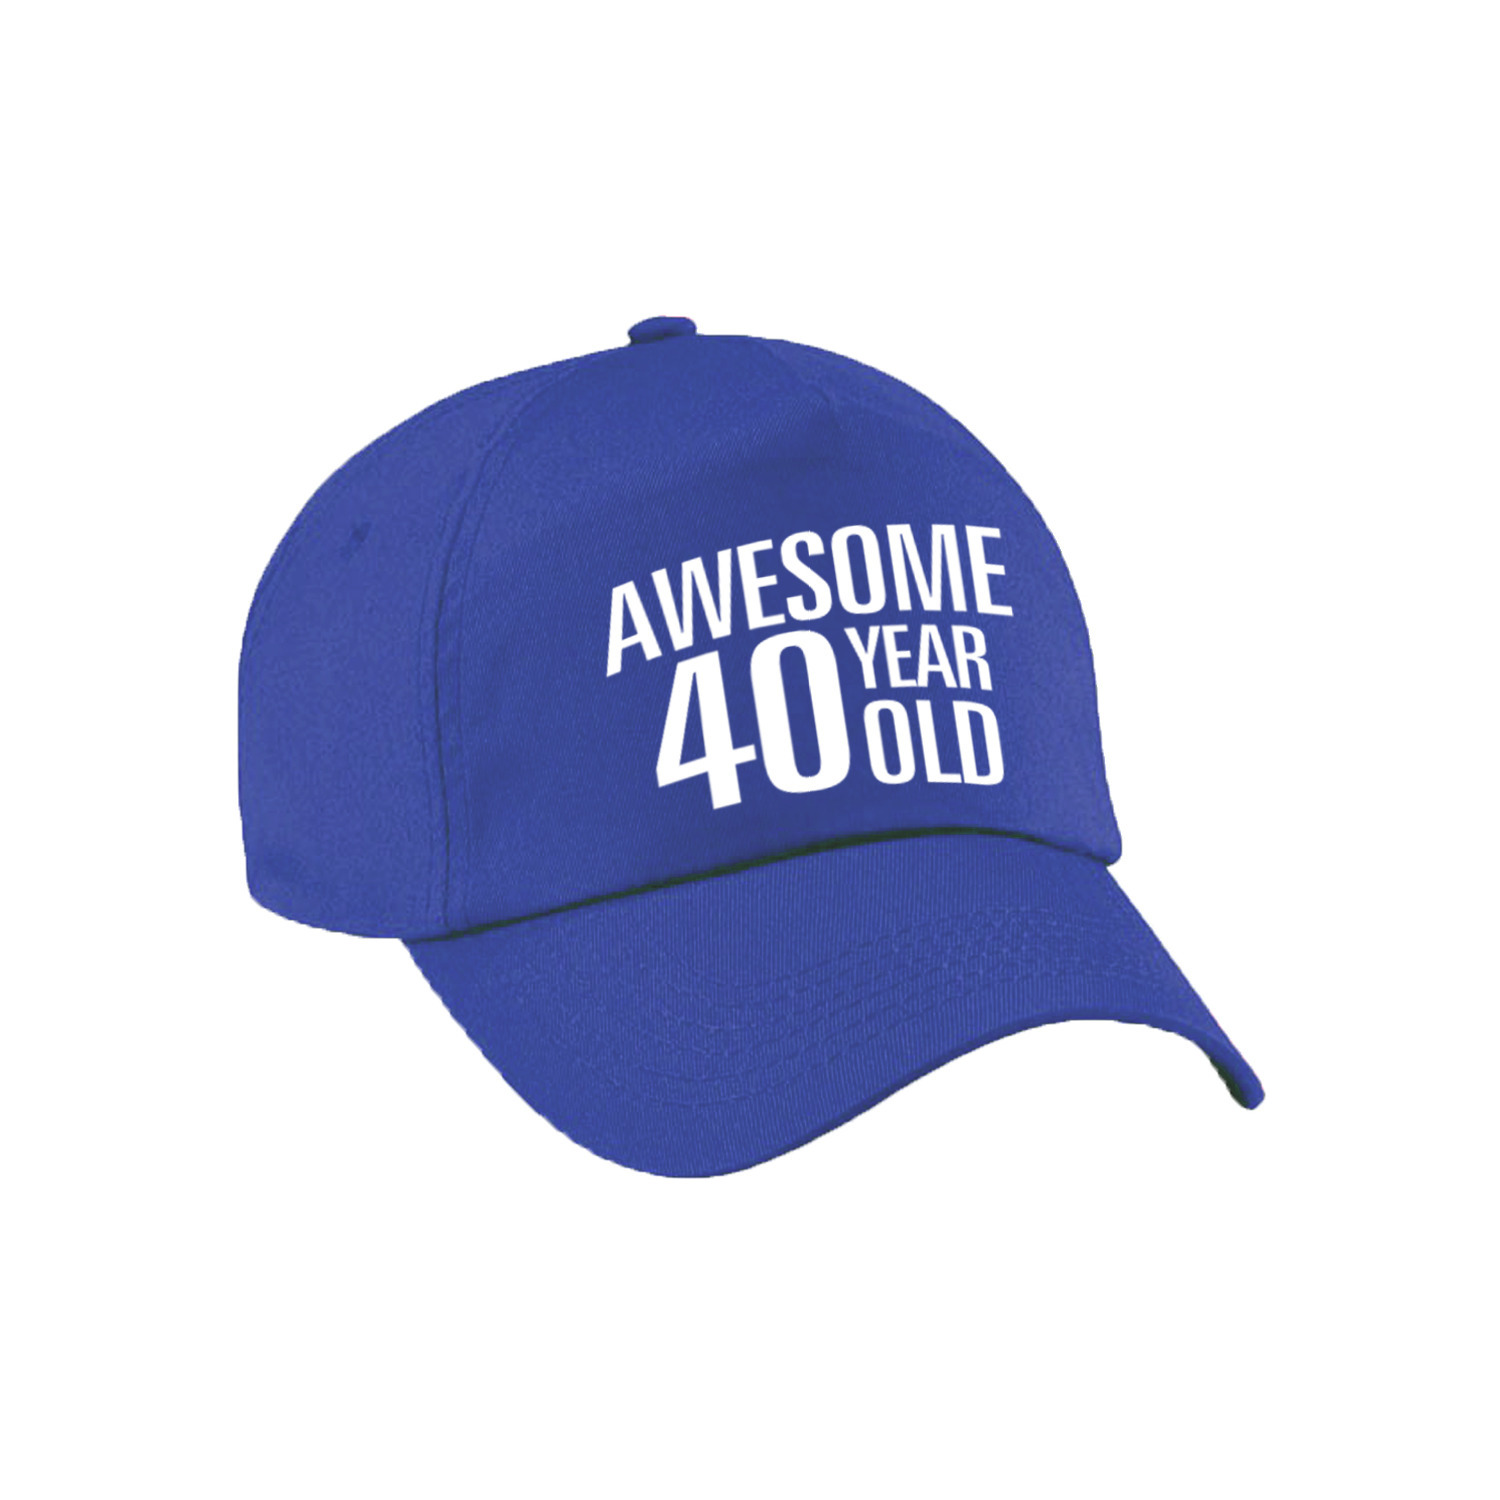 Awesome 40 year old verjaardag pet / cap blauw voor dames en heren